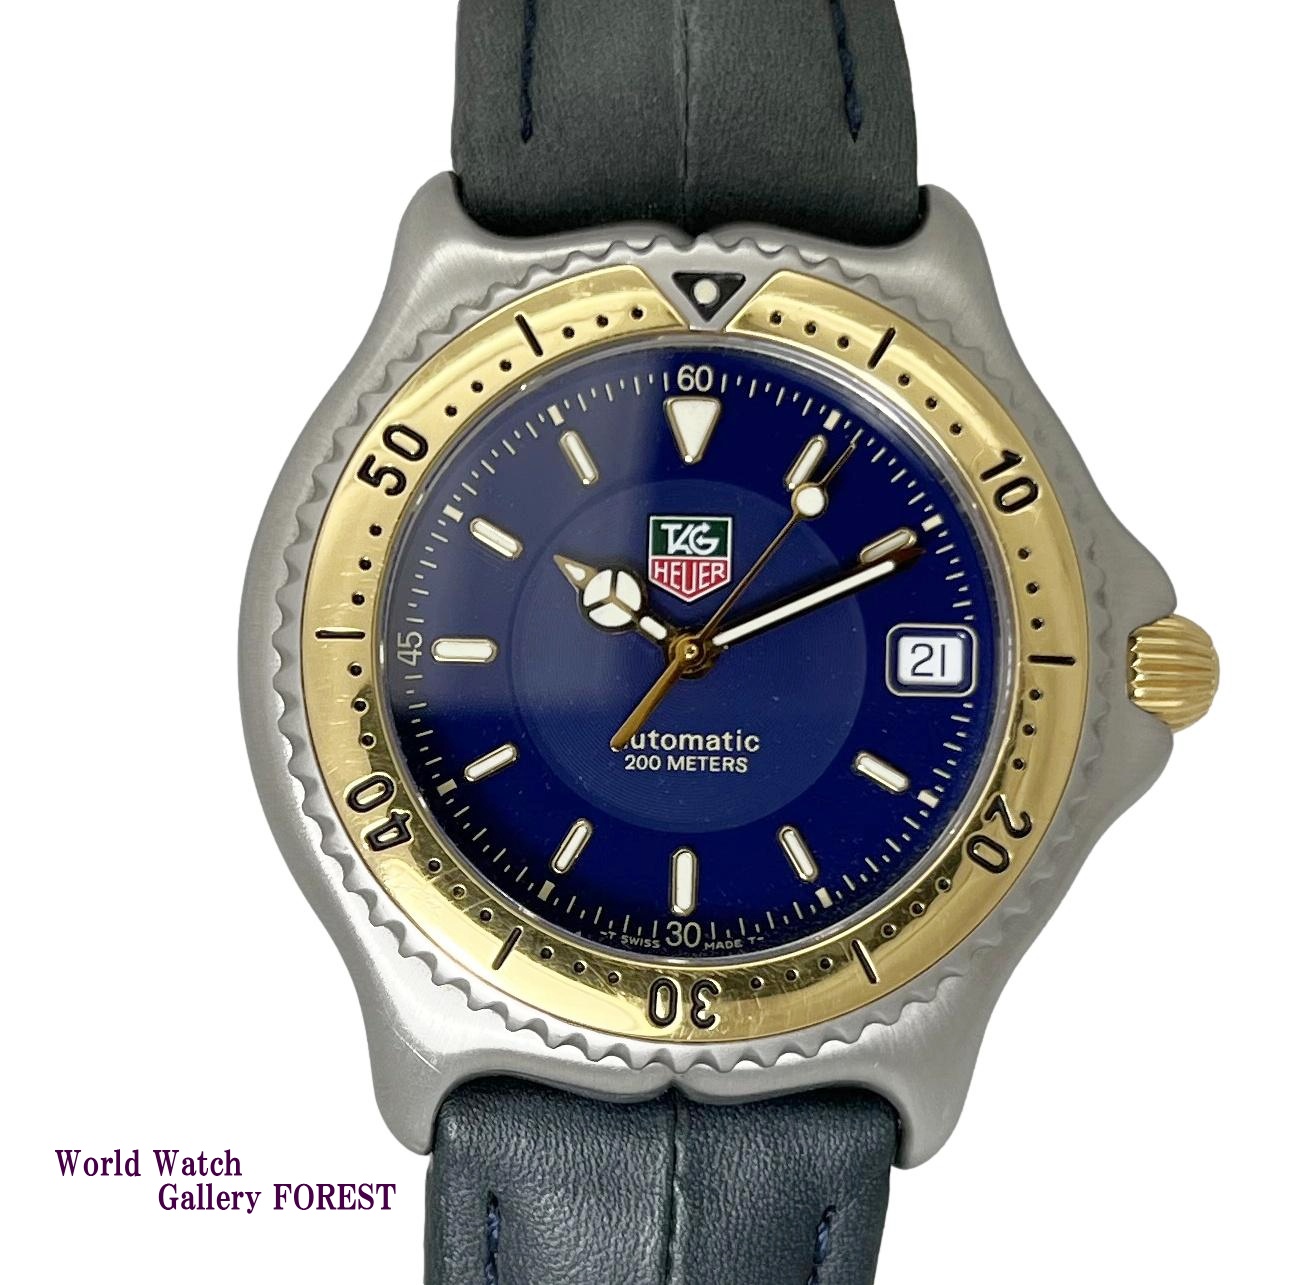 タグホイヤー プロフェッショナル 200M セルシリーズ WI2151-K0 中古 メンズ腕時計 自動巻き 18KYGベゼル